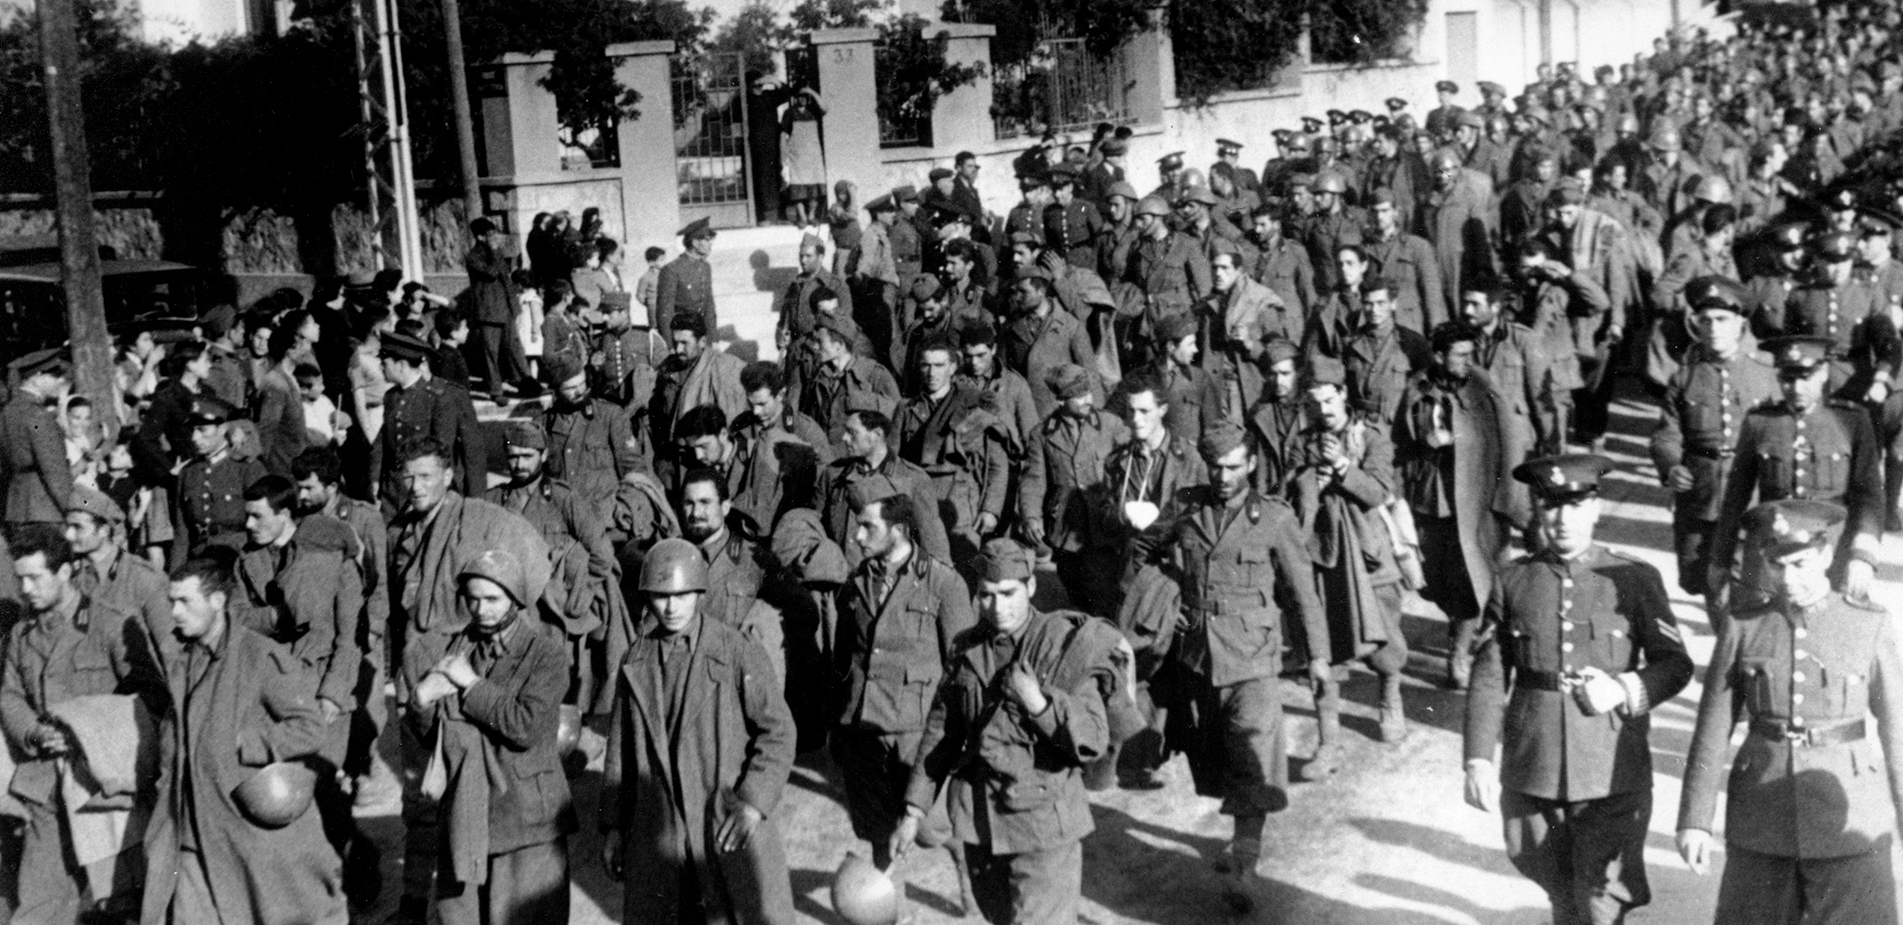 Τα πρακτικά του κρίσιμου πολεμικού συμβουλίου που συγκάλεσε ο Μουσολίνι πριν την επίθεση στην Ελλάδα το 1940